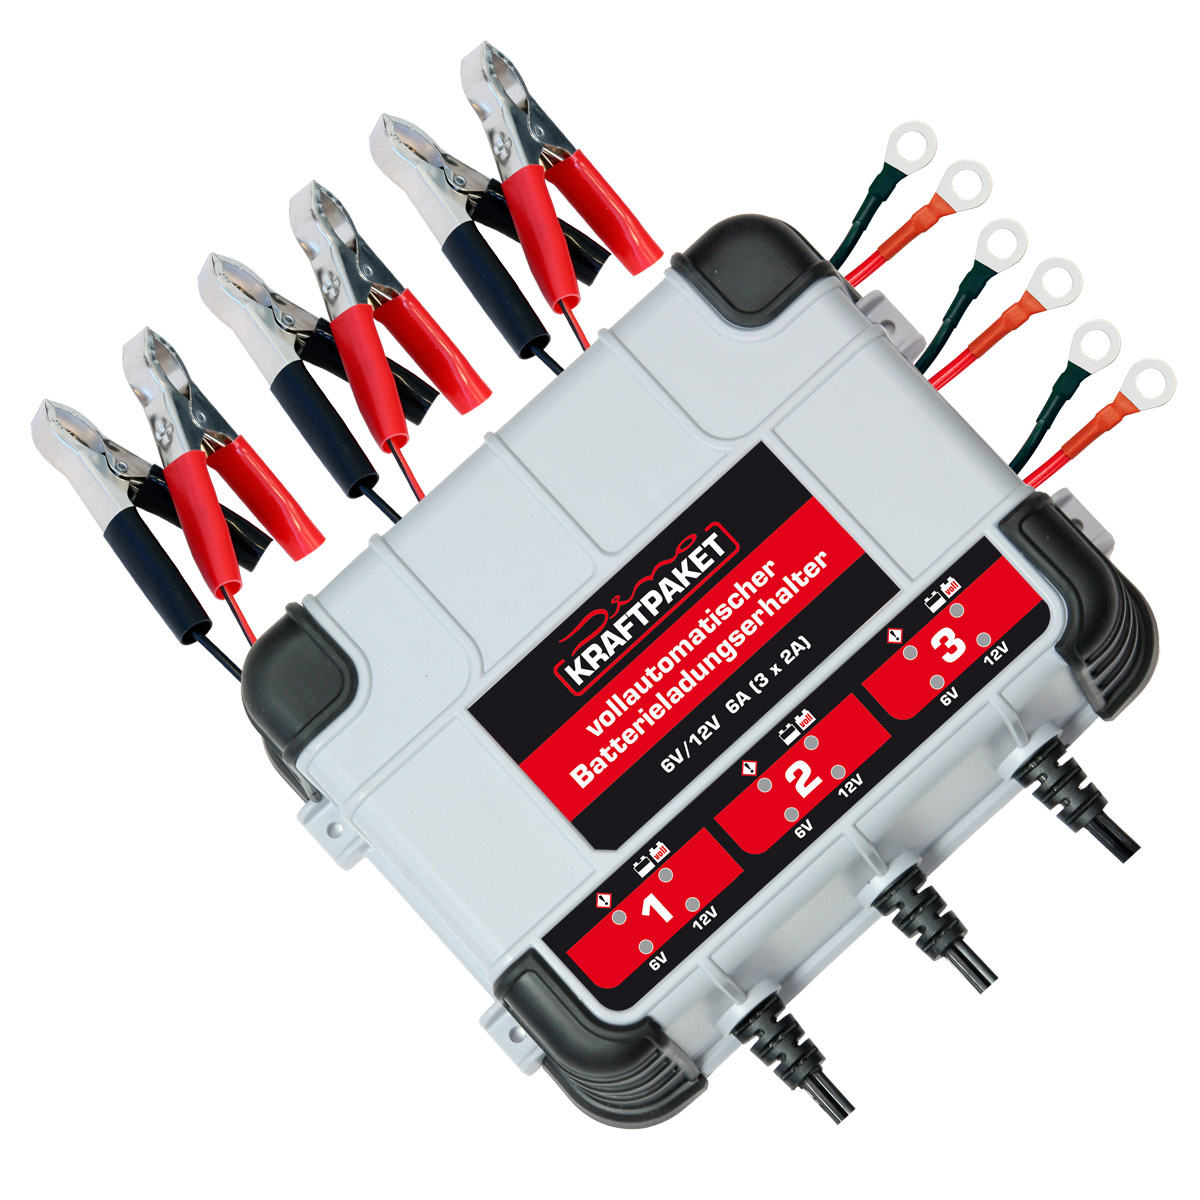 Ladegerät für Auto Motorrad 12V Batterie 2A